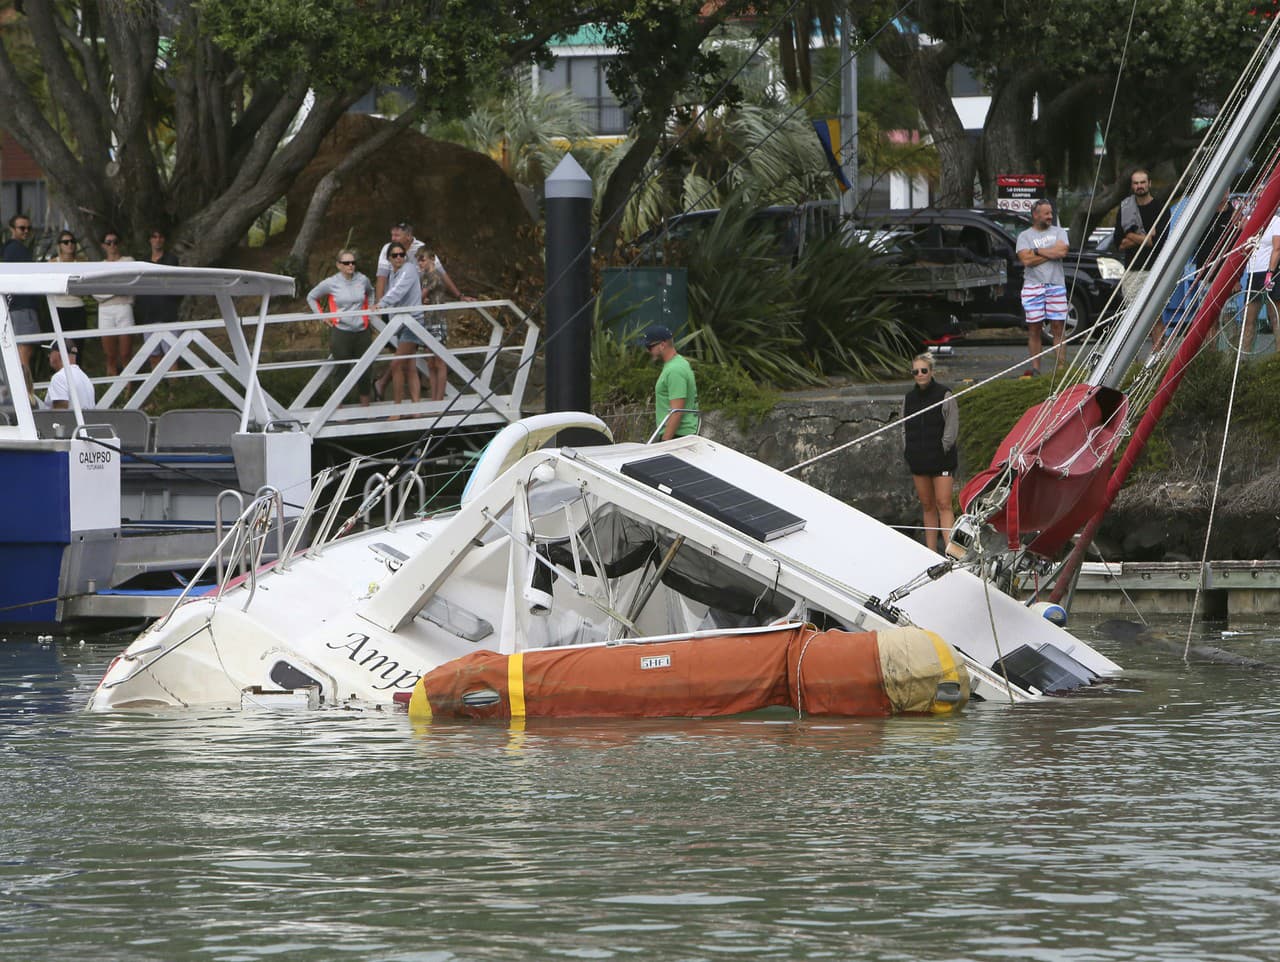 ostrovný štát zasiahla vlna cunami a spôsobila škody